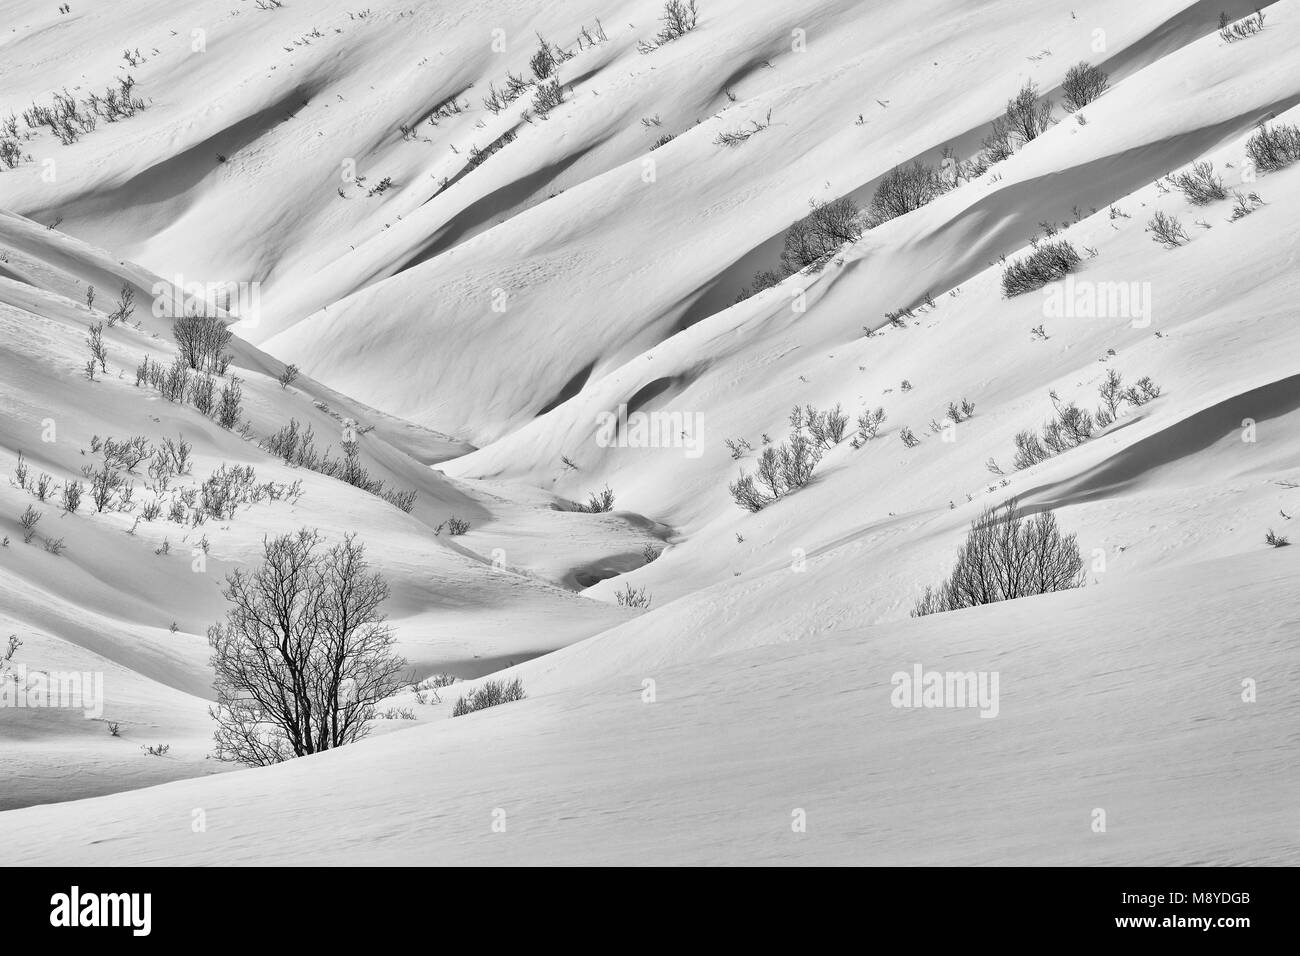 La couverture de neige Talkeetna Mountains, à Hatcher Pass crée des formes fluides à la fin de l'hiver dans le sud de l'Alaska. Banque D'Images